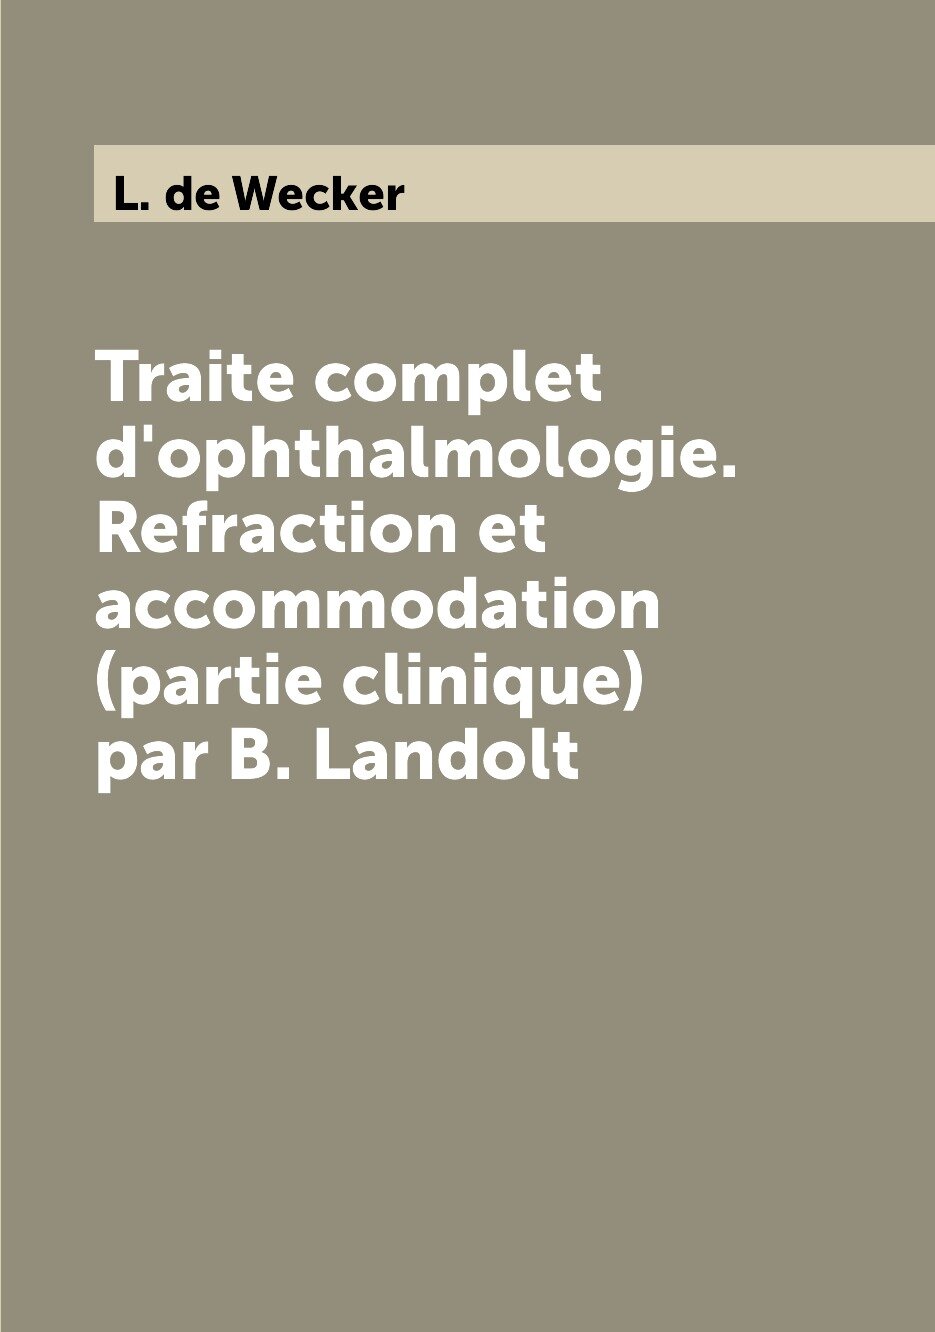 Traite complet d'ophthalmologie. Refraction et accommodation (partie clinique) par B. Landolt